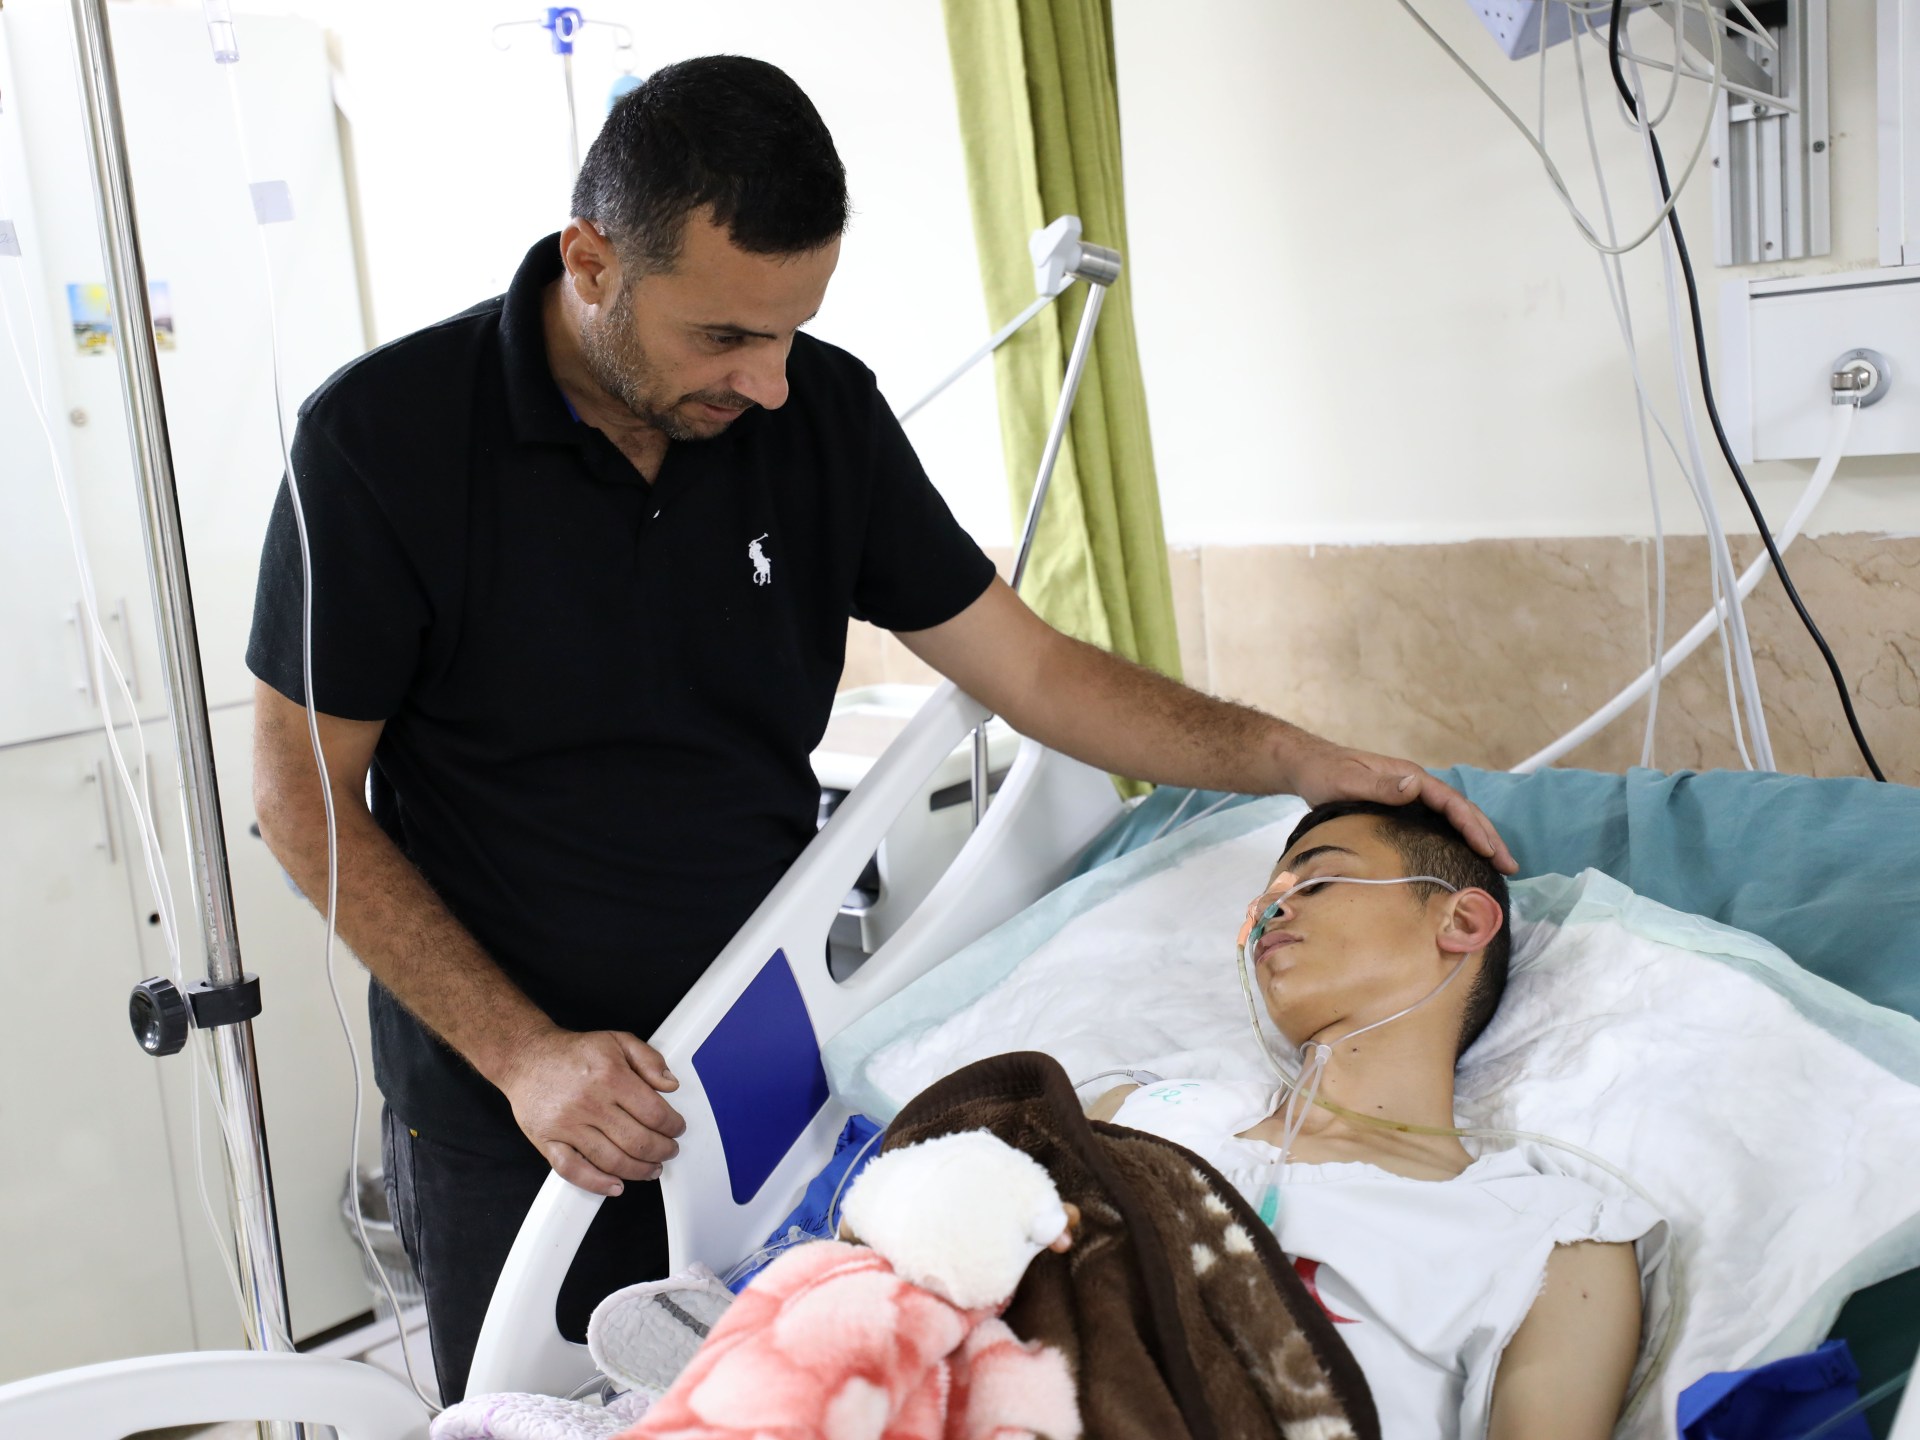 Warga Palestina yang Terluka dalam Serangan Jenin Menghadapi Jalan Panjang Menuju Pemulihan Tepi Barat yang Diduduki